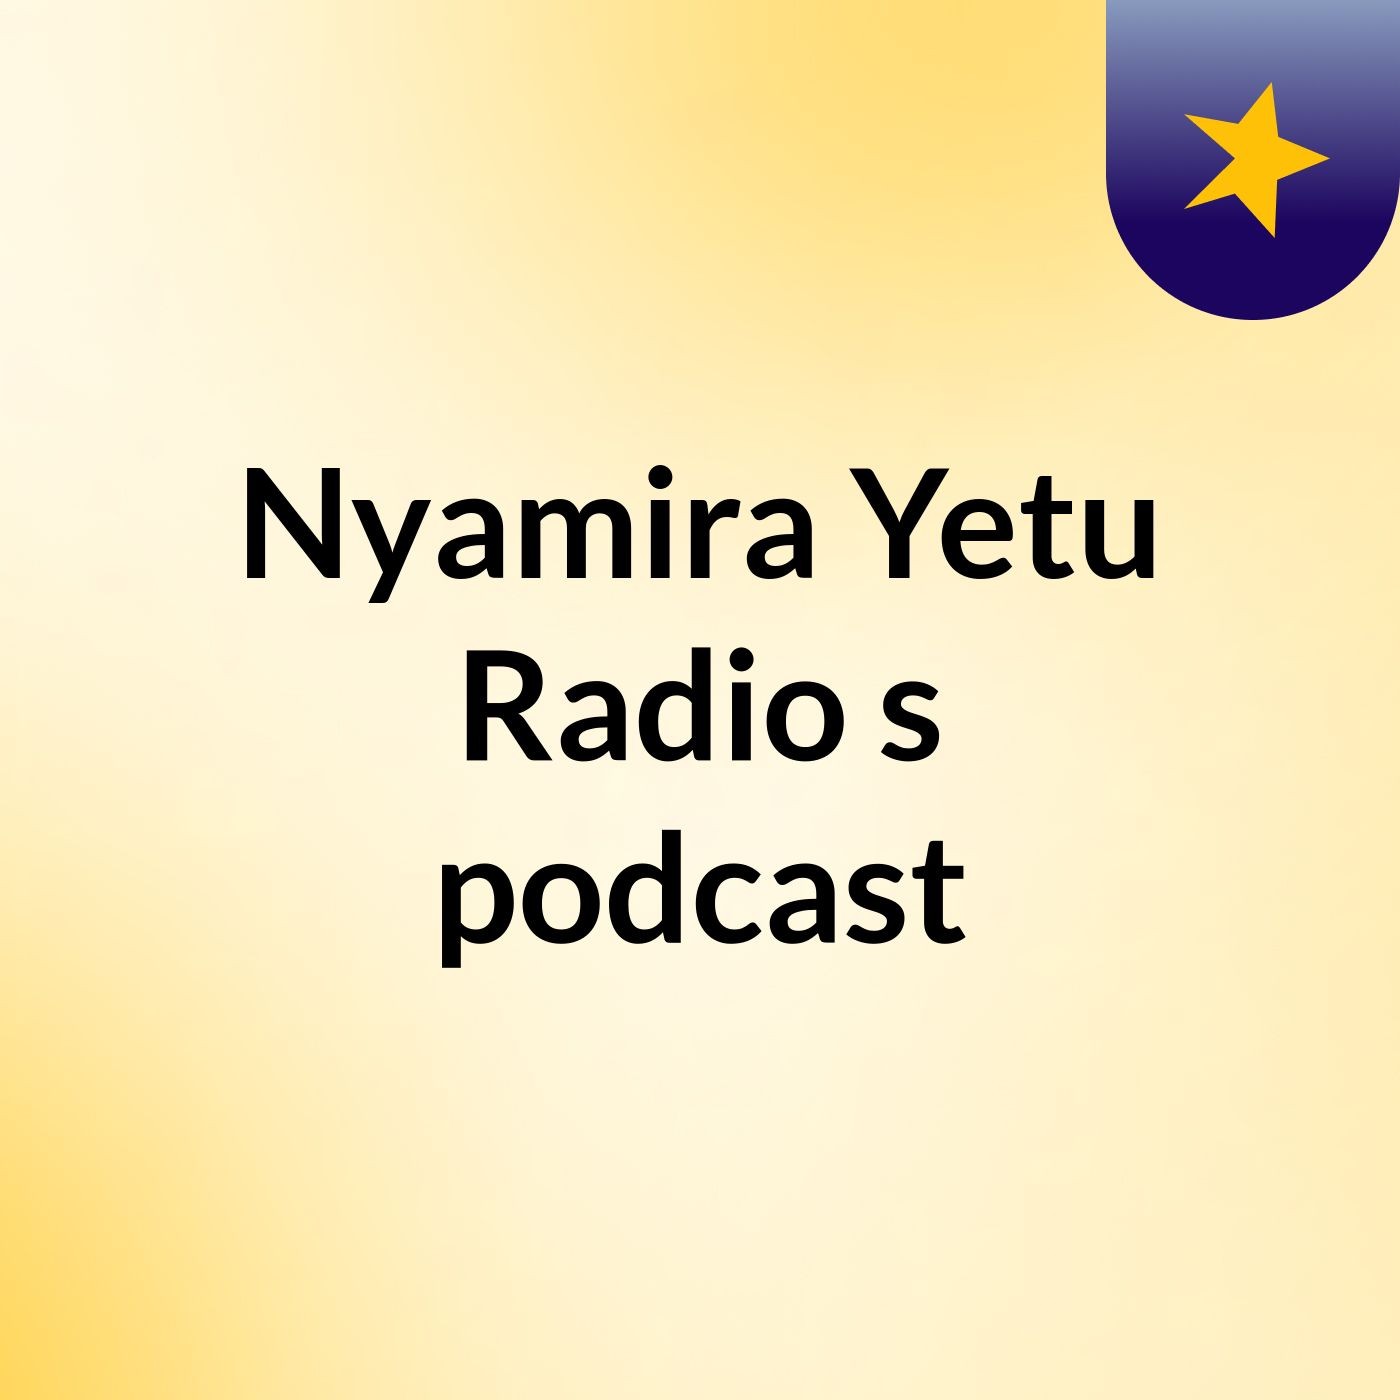 Nyamira Yetu Radio's podcast